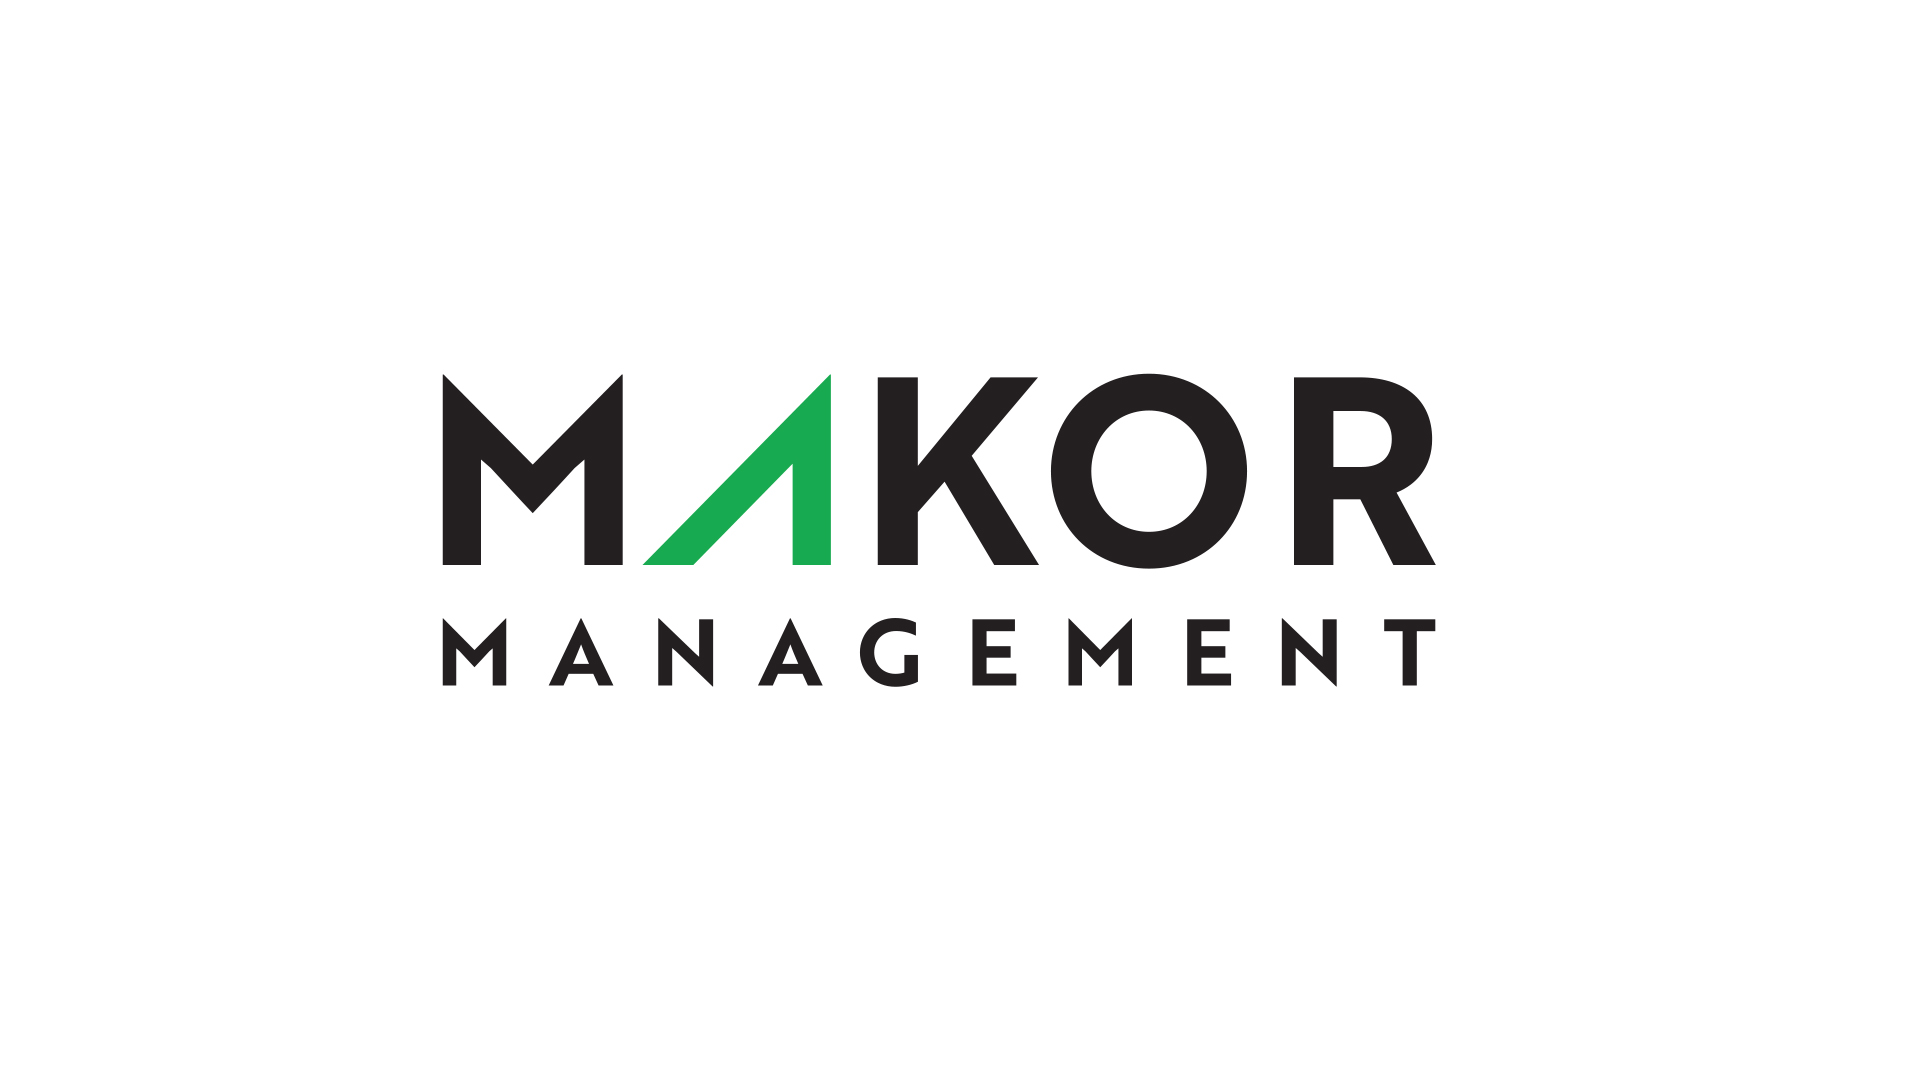 makor management on white